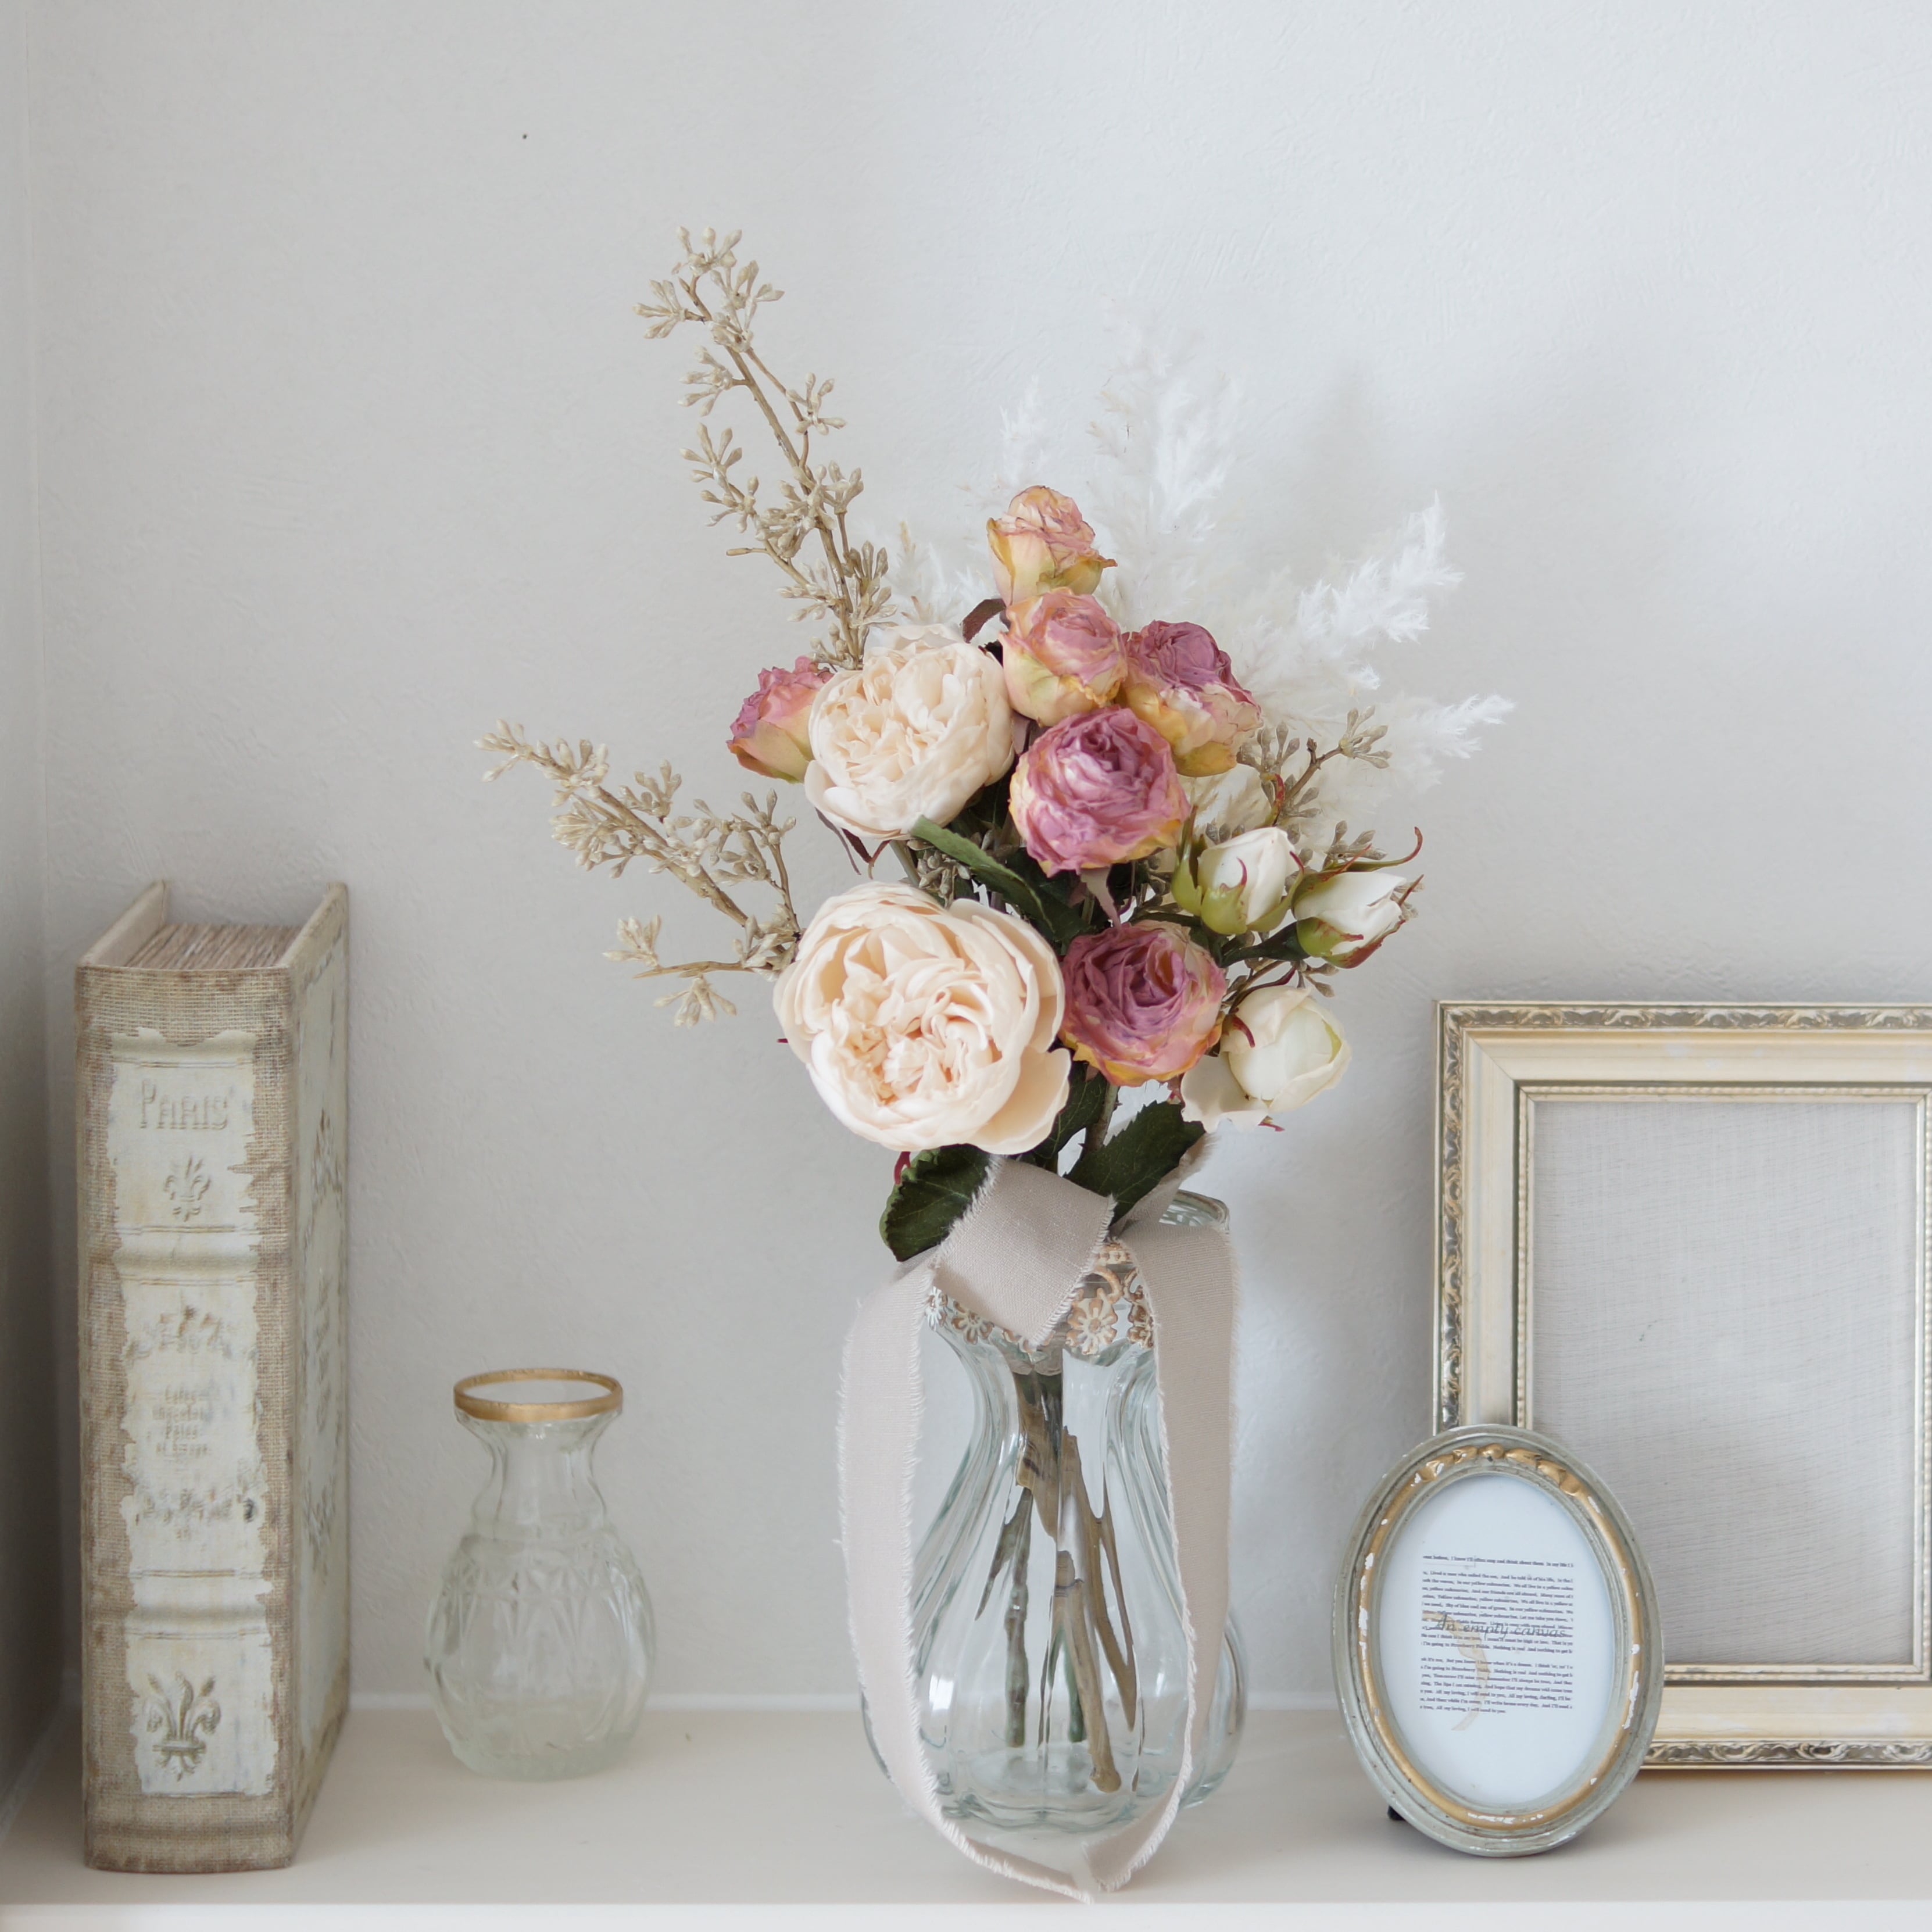 ユーカリとピンクベージュのバラのスワッグ  ハンドメイド  リース  造花